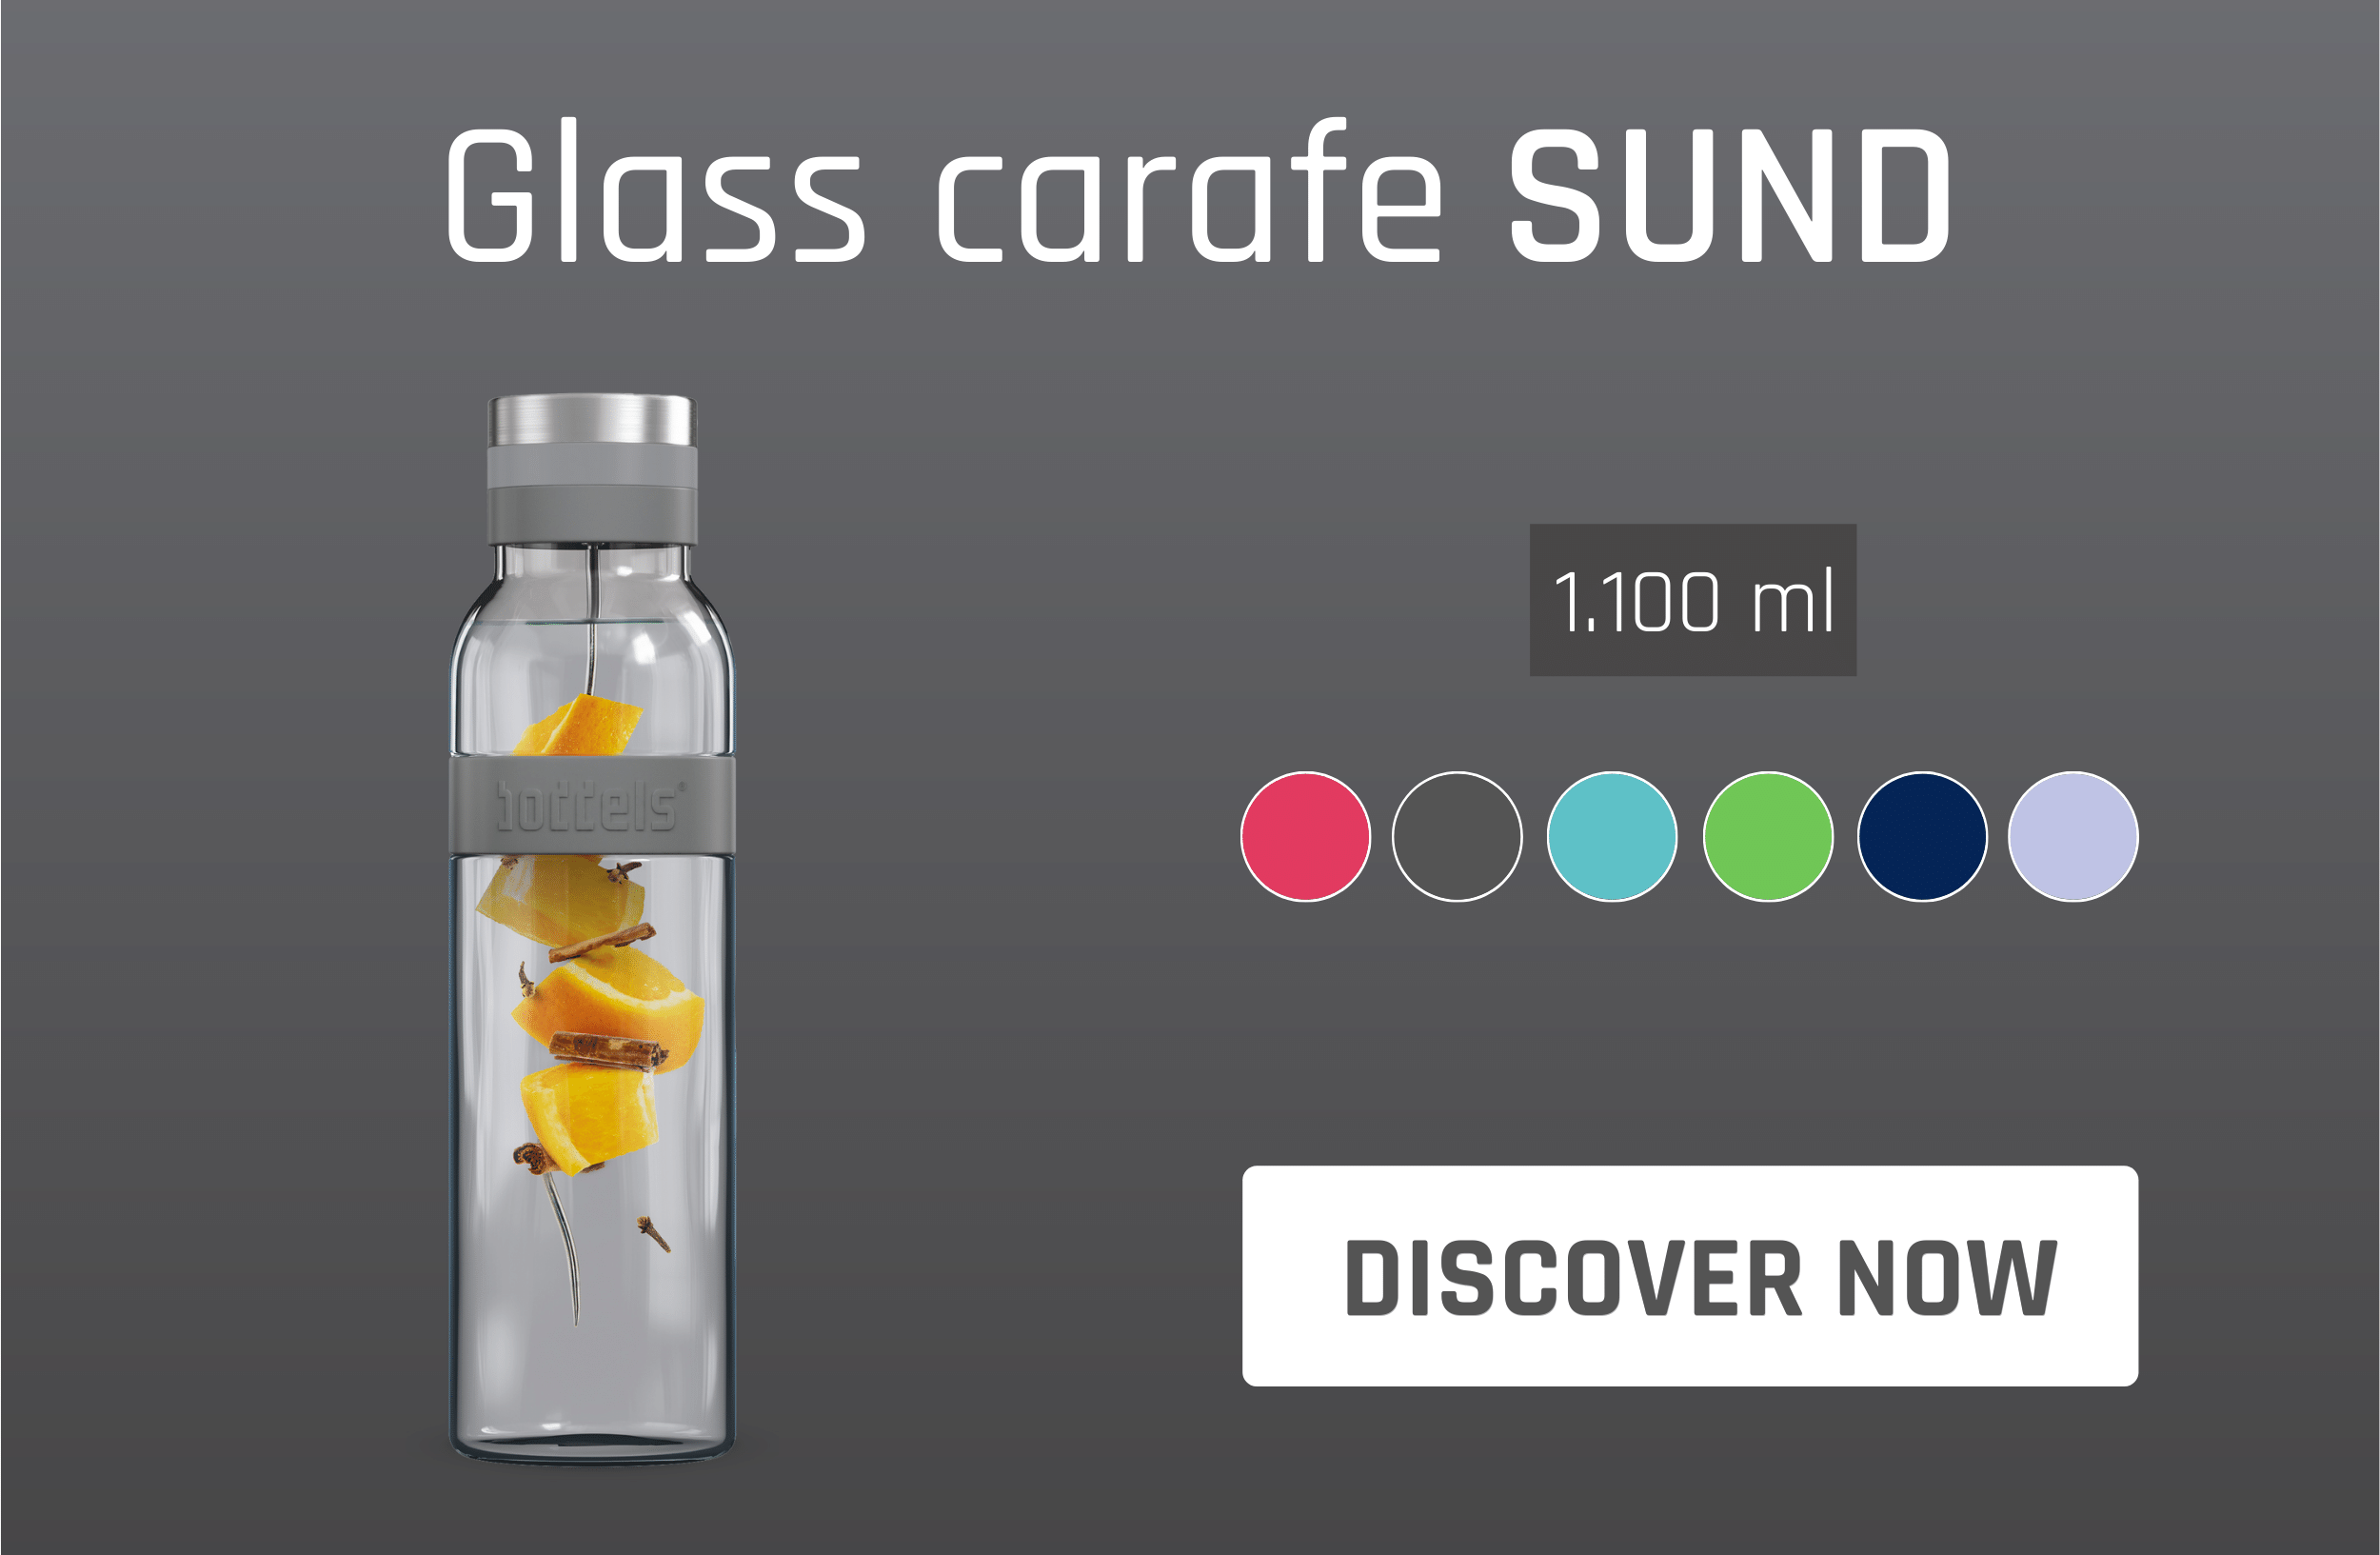 Glass carafe SUND